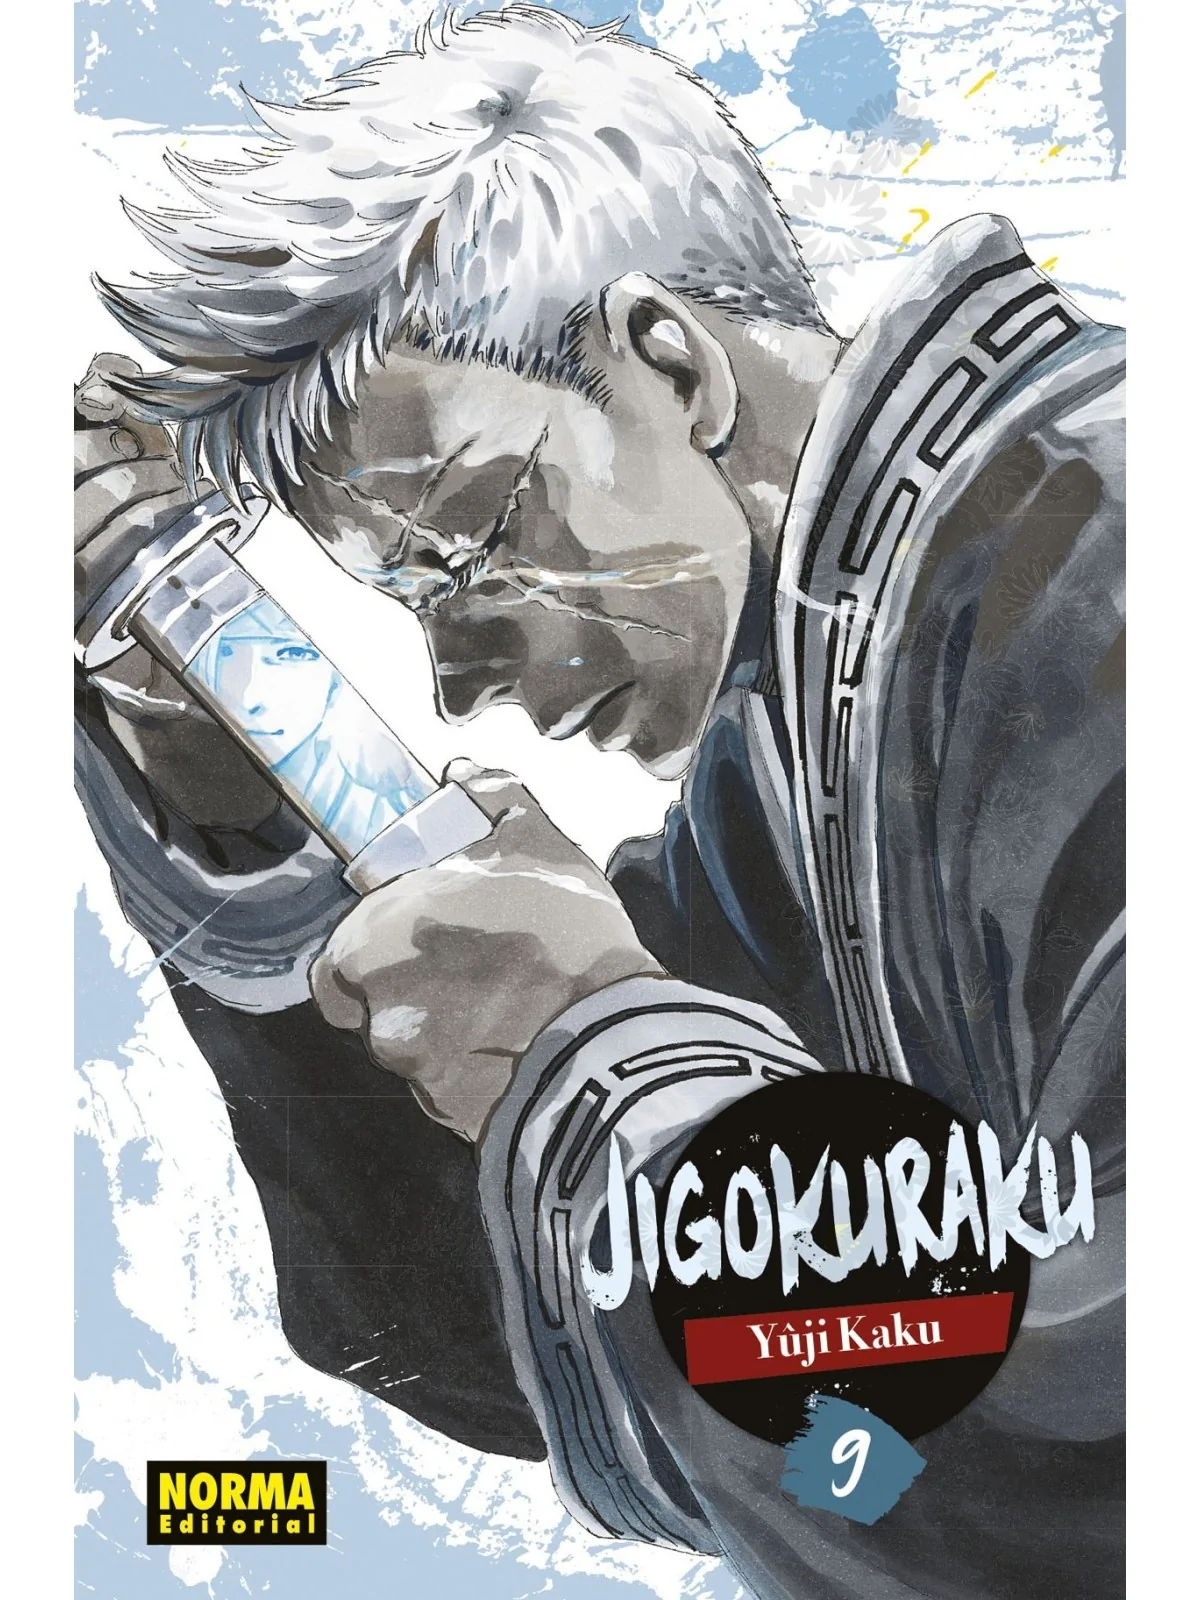 Comprar Jigokuraku 09 barato al mejor precio 8,55 € de Norma Editorial